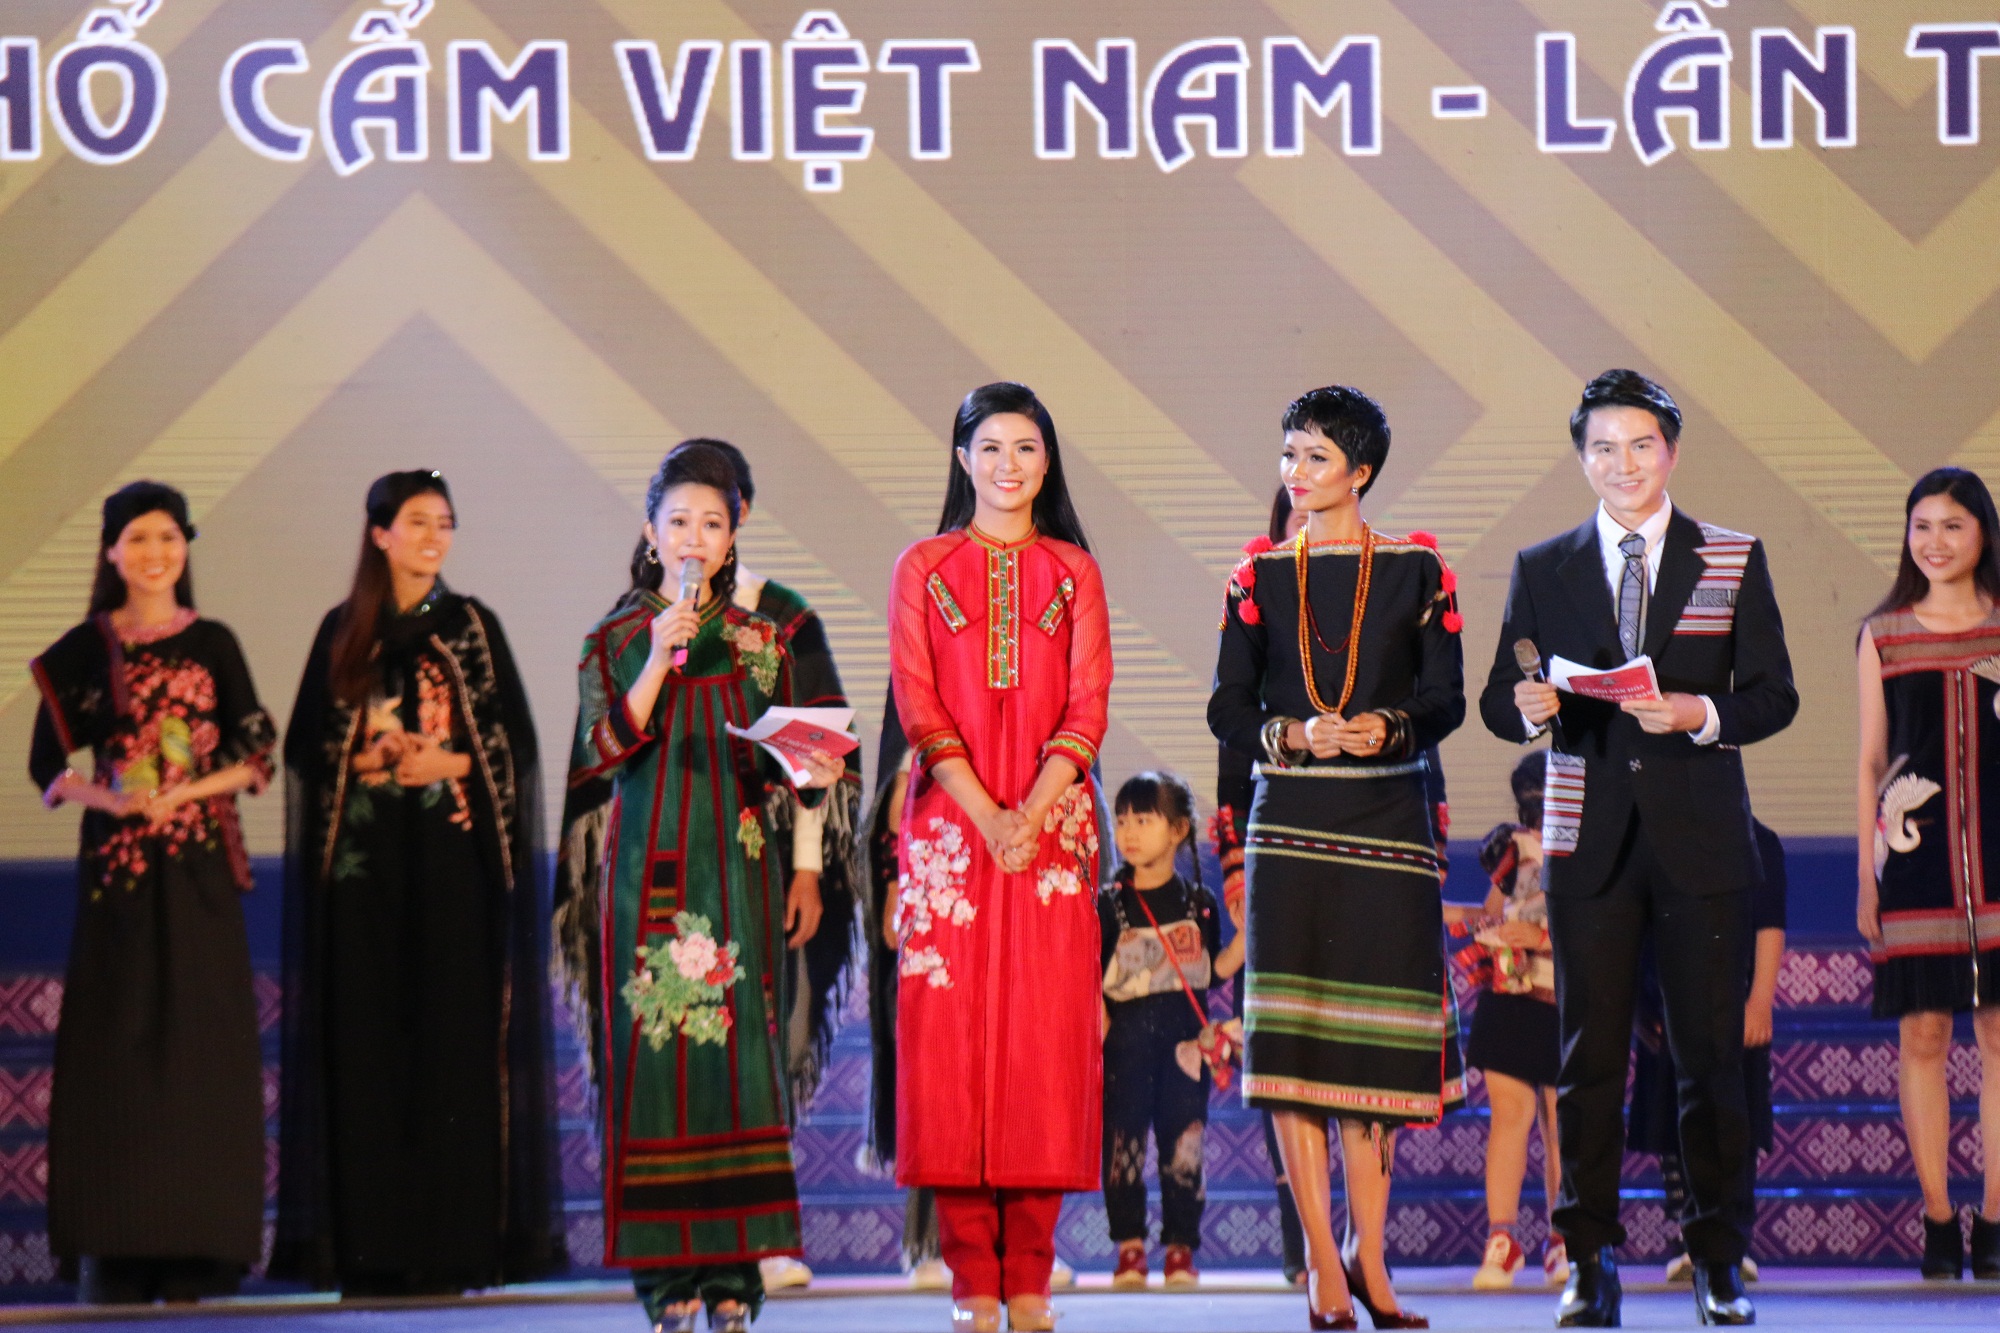 Đắk Nông: Khai mạc Lễ hội Văn hóa thổ cẩm Việt Nam lần thứ nhất